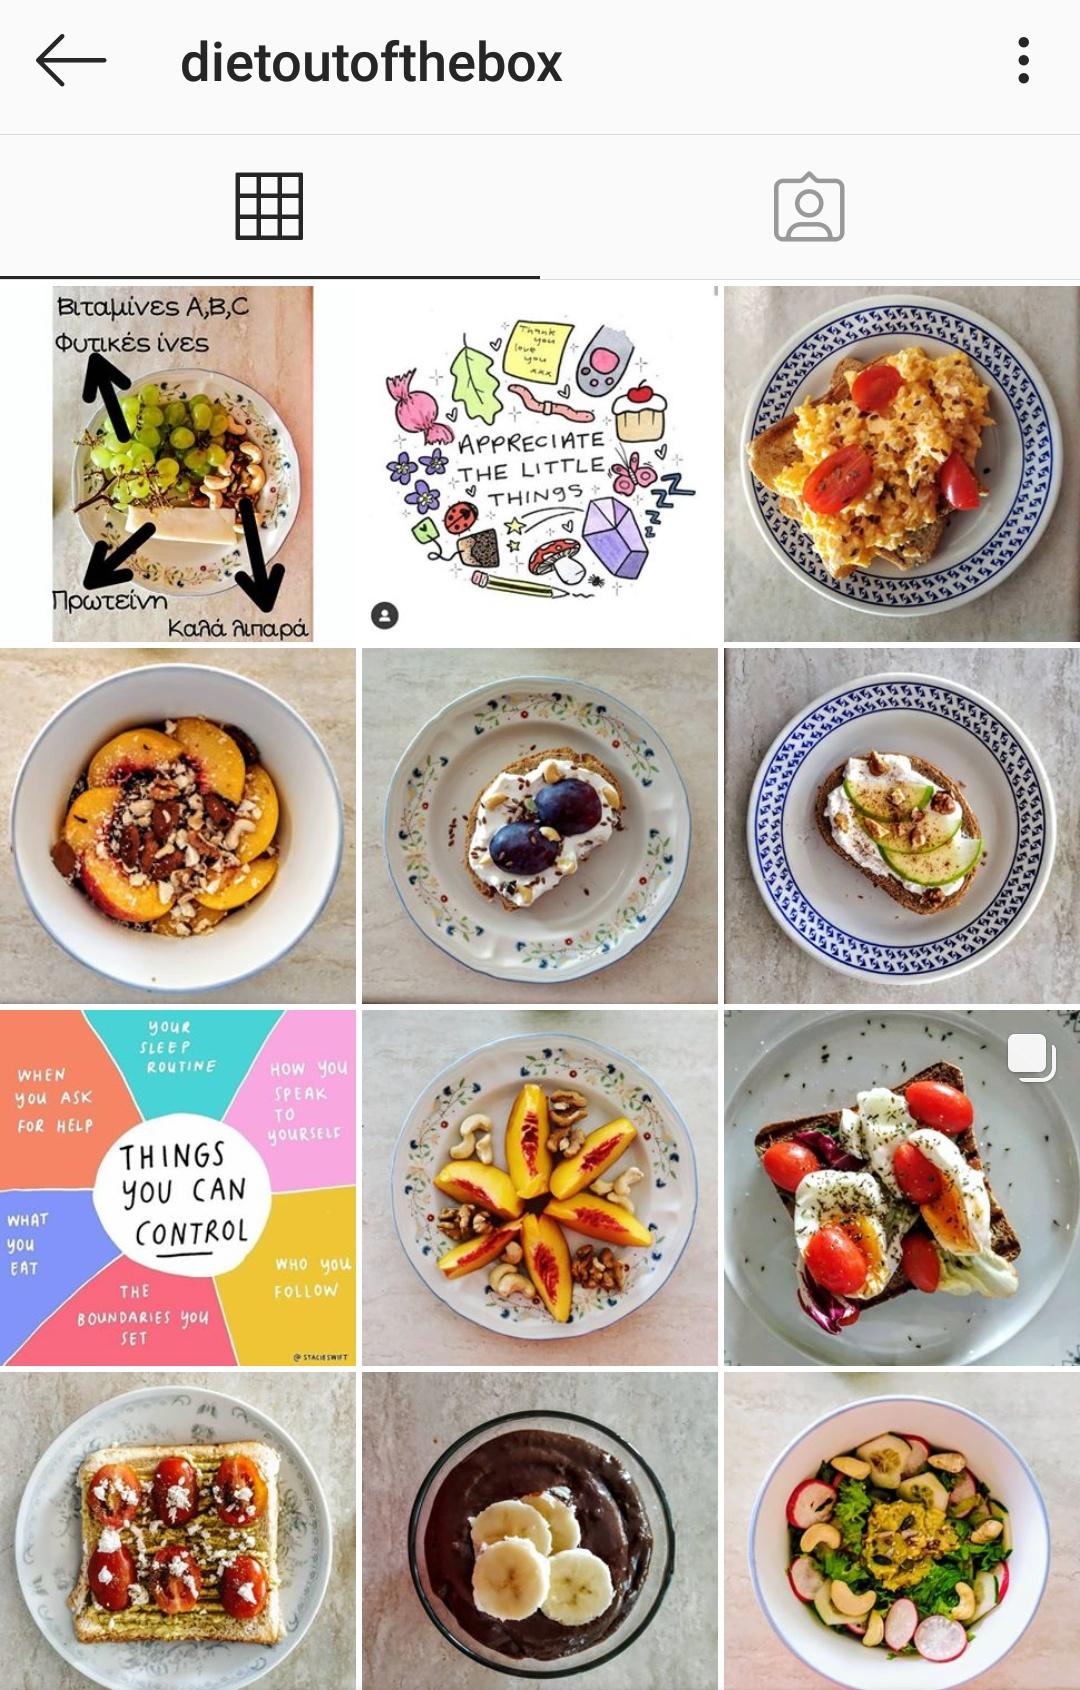 Βρήκαμε 3 υπέροχα Instagram profiles με υγιεινές και νόστιμες συνταγές